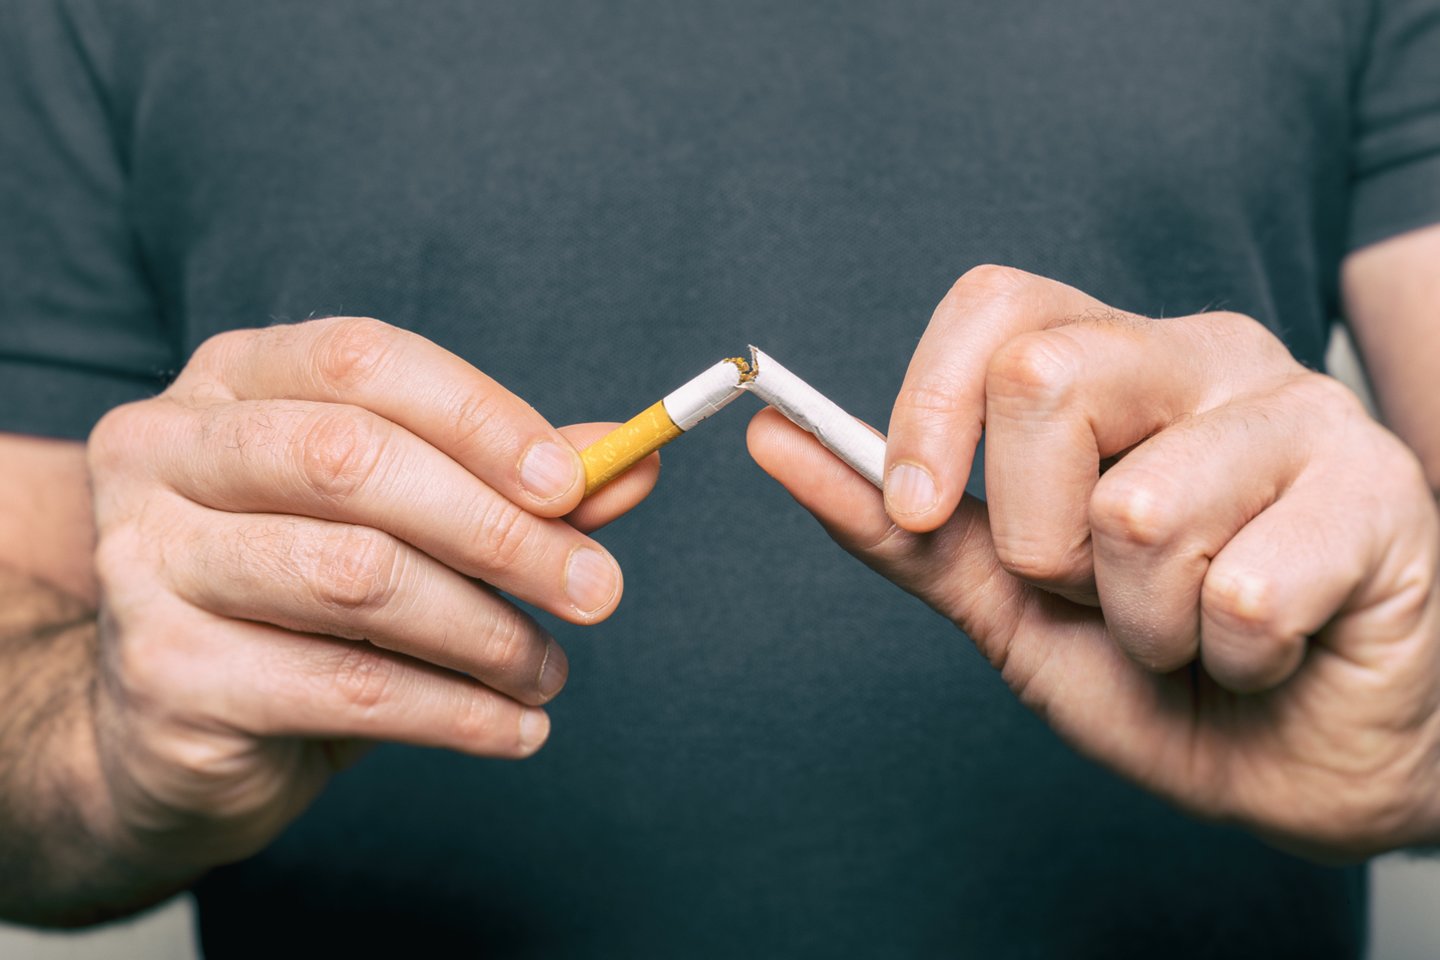 Rūkantys žmonės iki 80 proc. dažniau COVID-19 suserga taip sunkiai, jog jiems prireikia gydymo ligoninėje.<br>123rf asociatyvi nuotr.